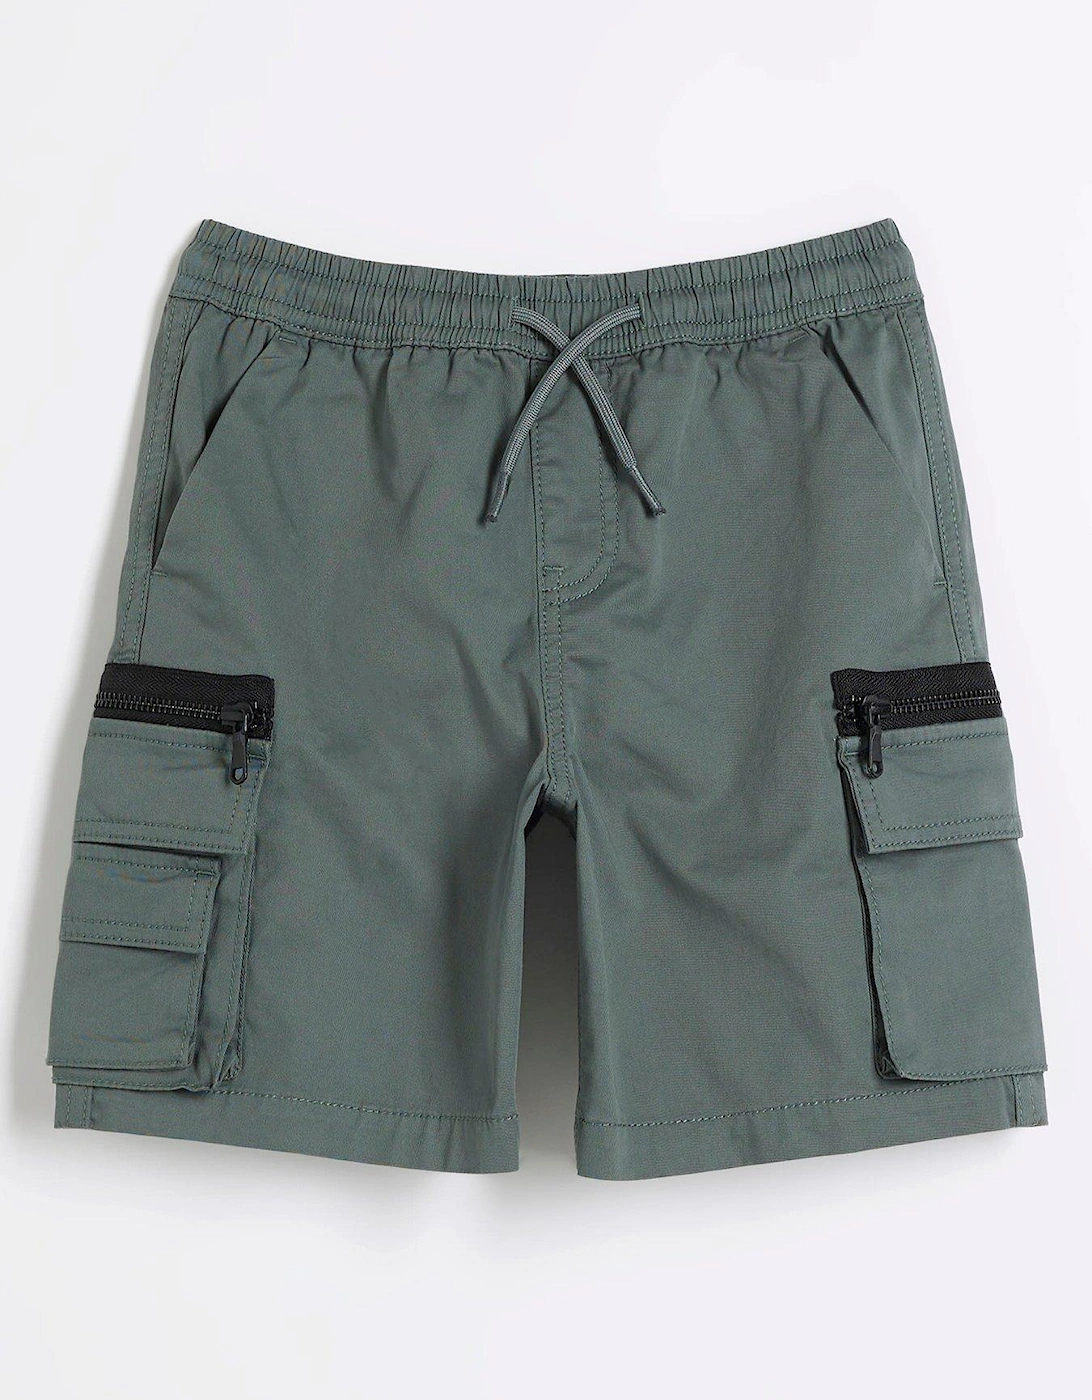 Boys Cargo Shorts - Green, 2 of 1